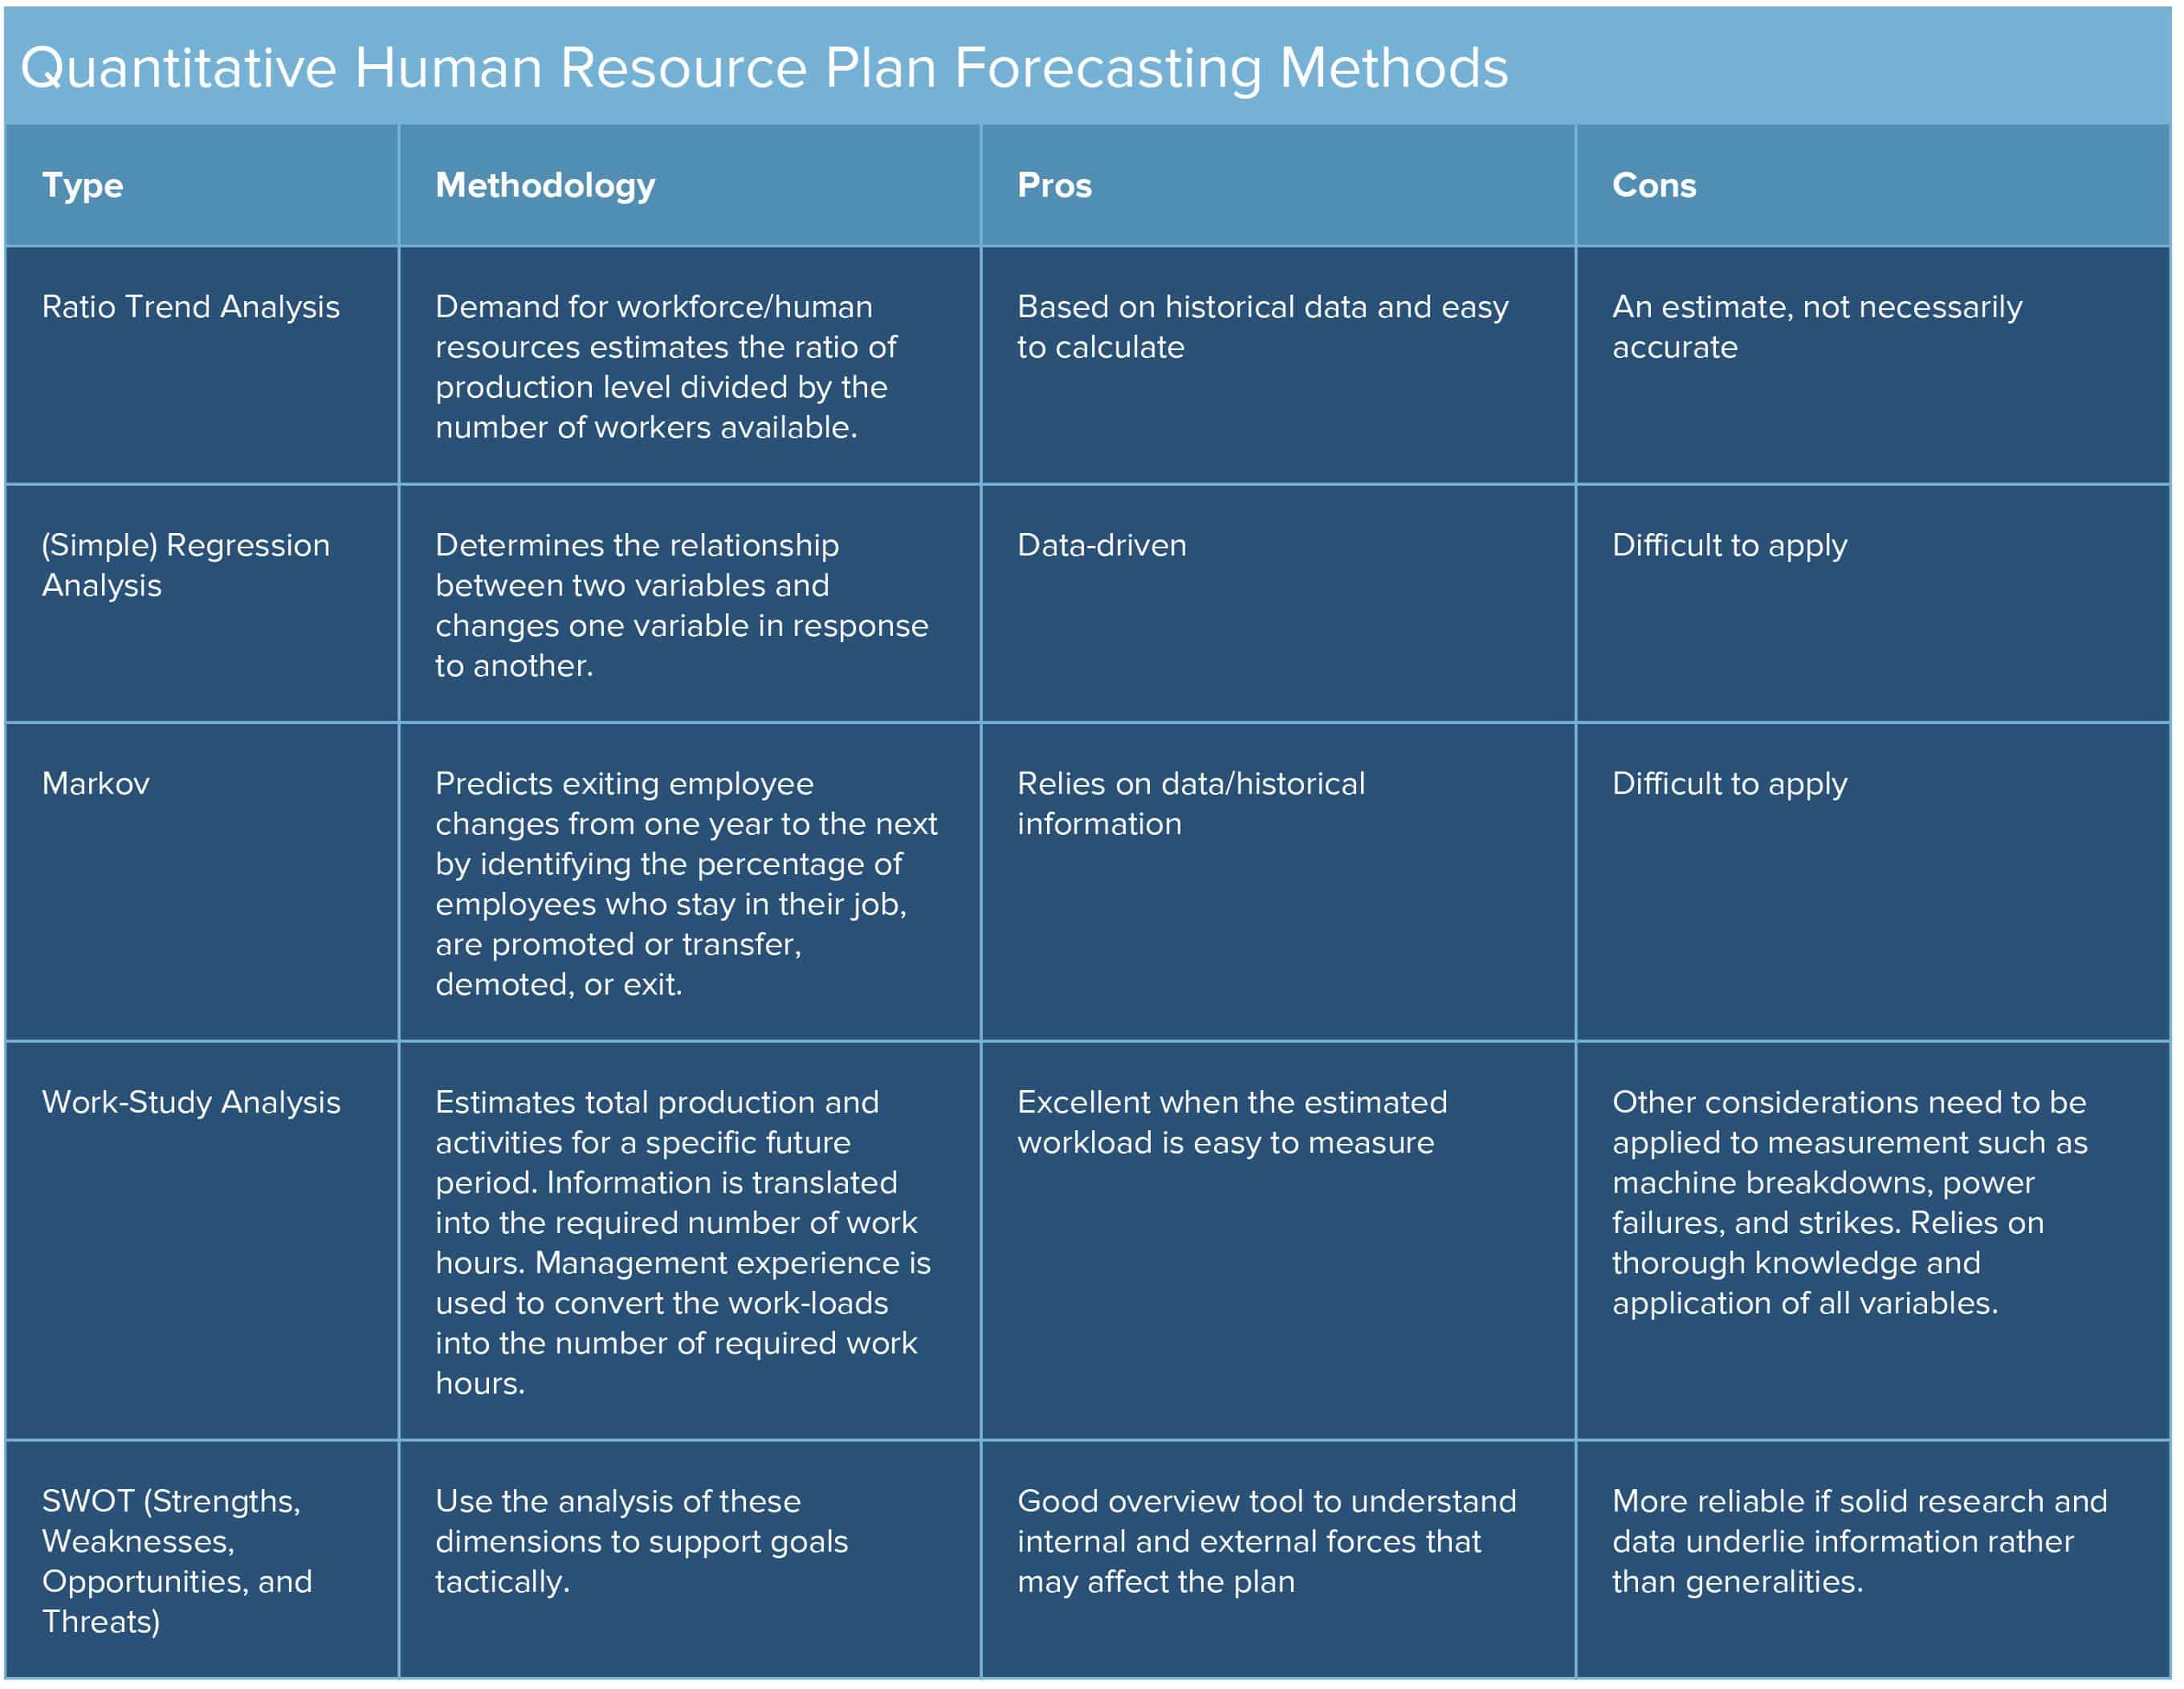 Quantitative HR Plan Forecasting Methods